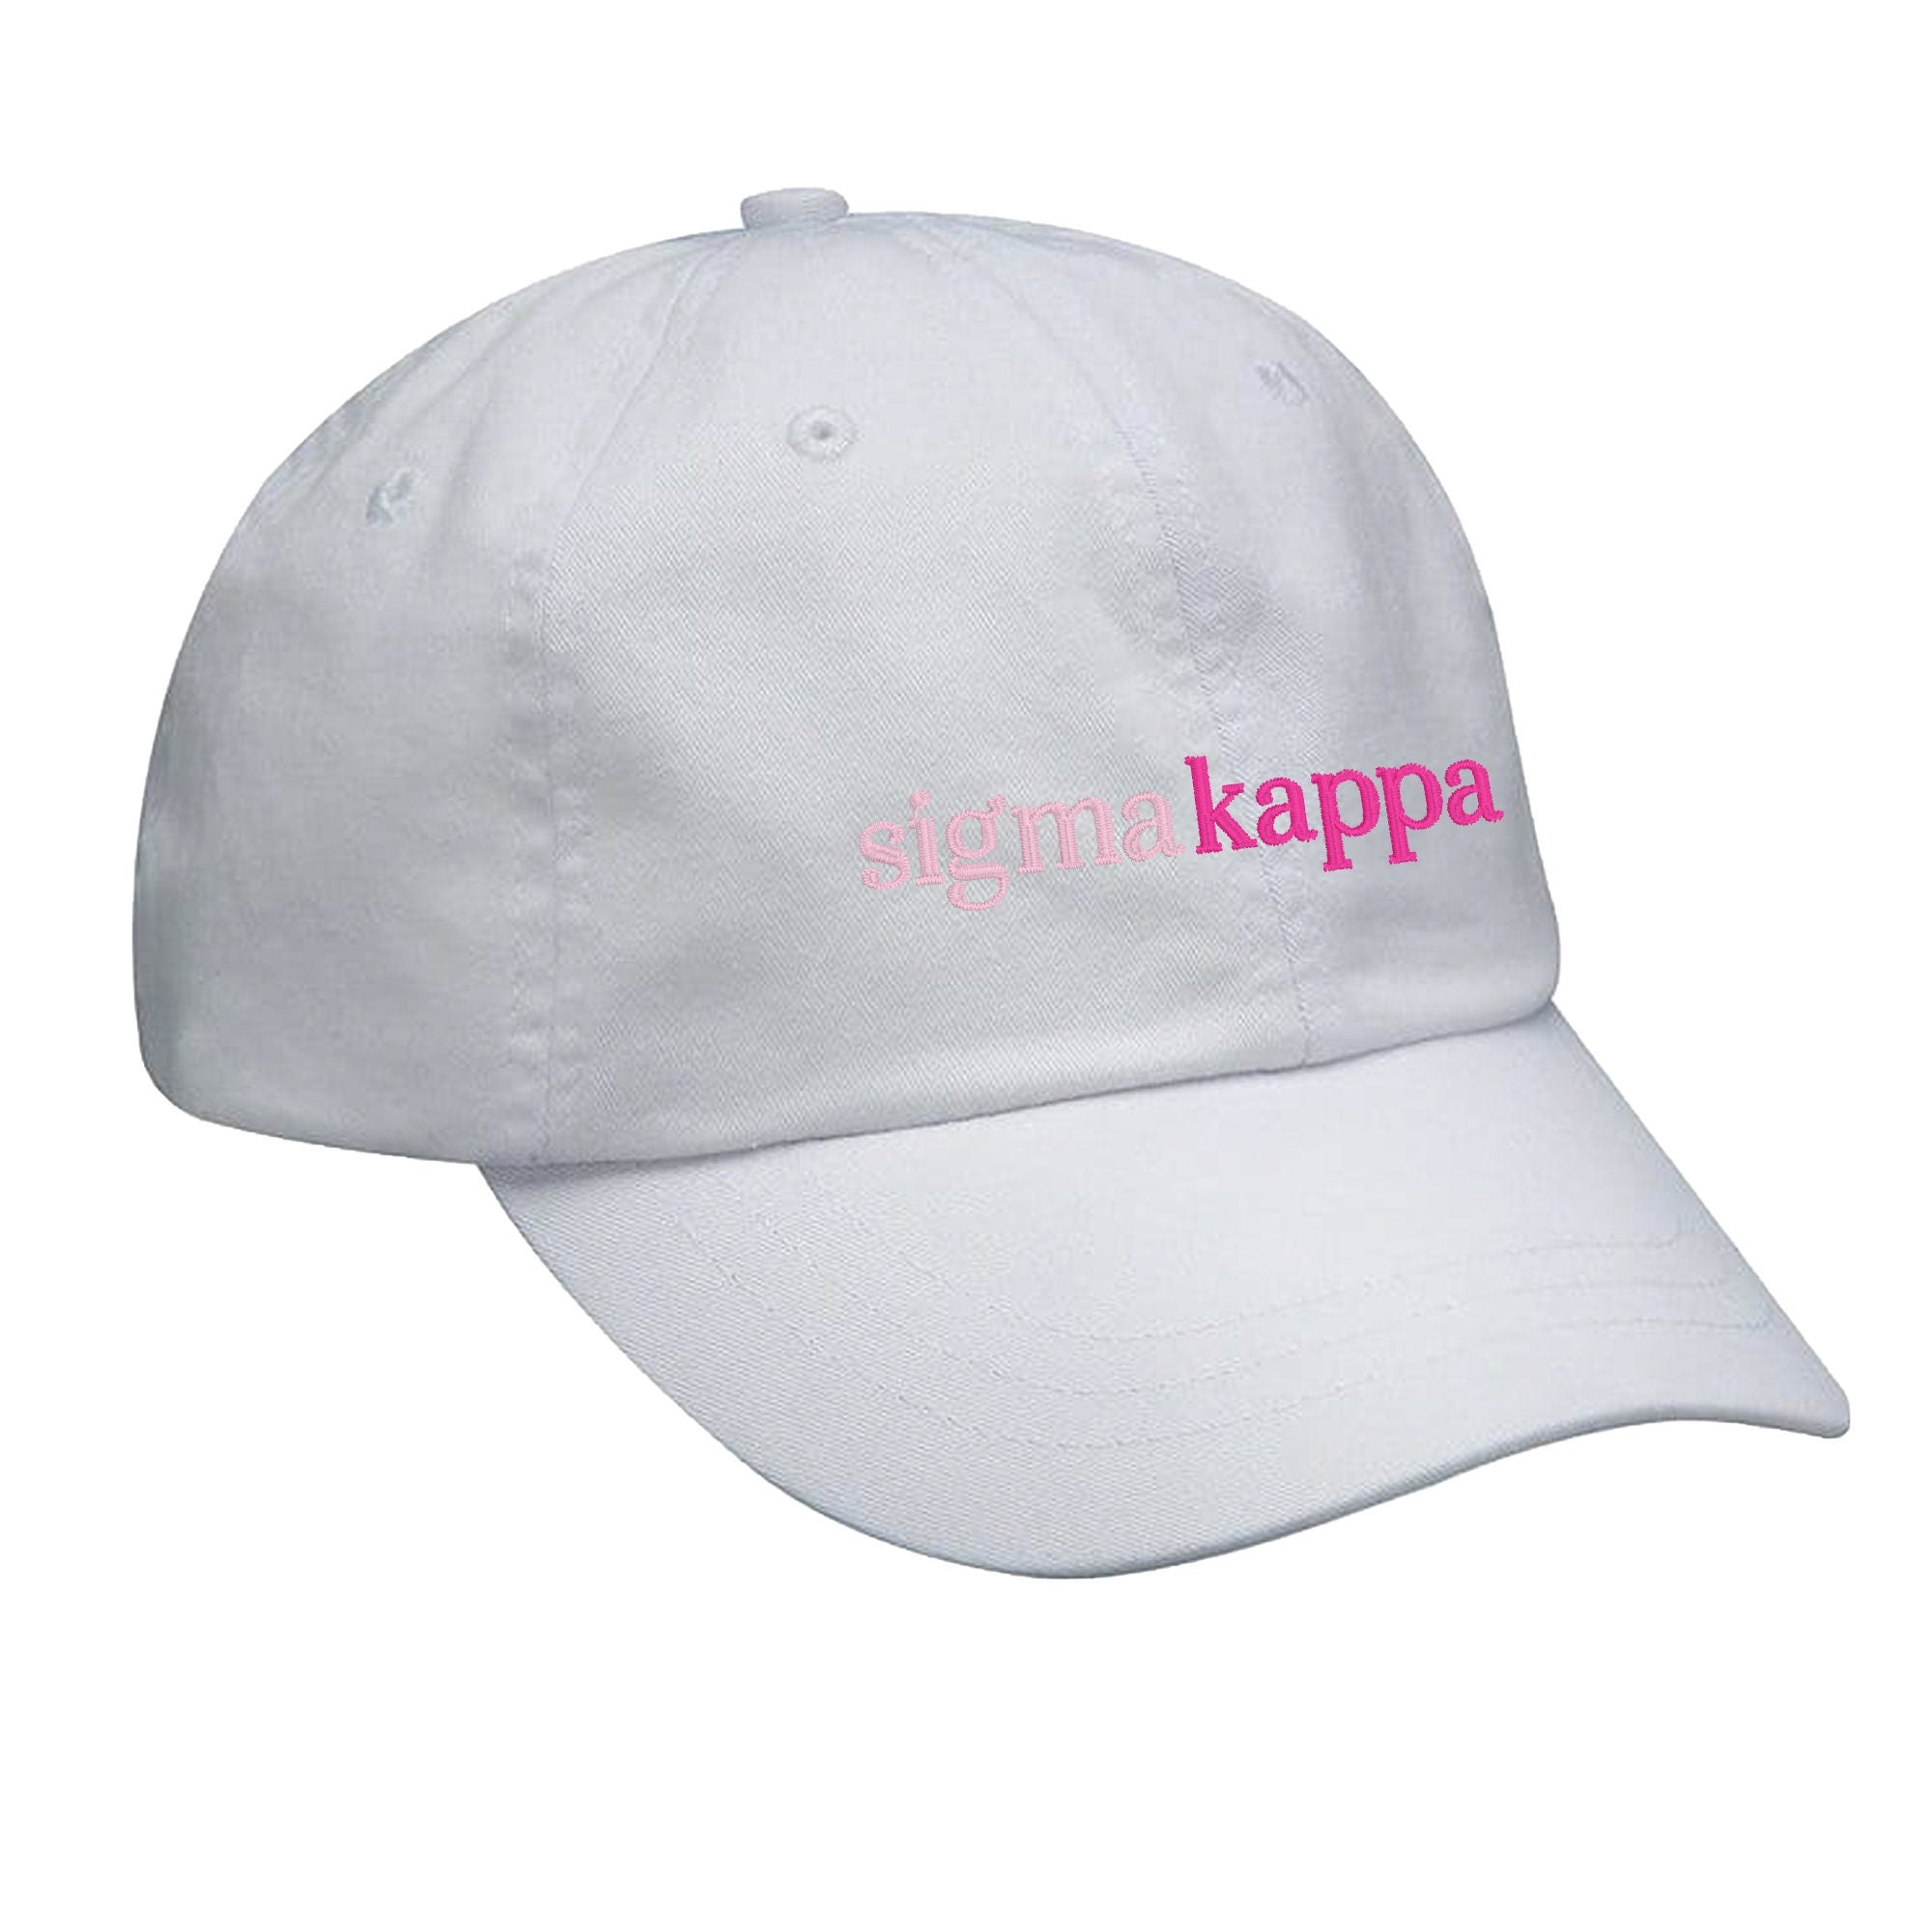 Kappa Kappa Gamma Hat - Gradient Chic – Go Greek Pink